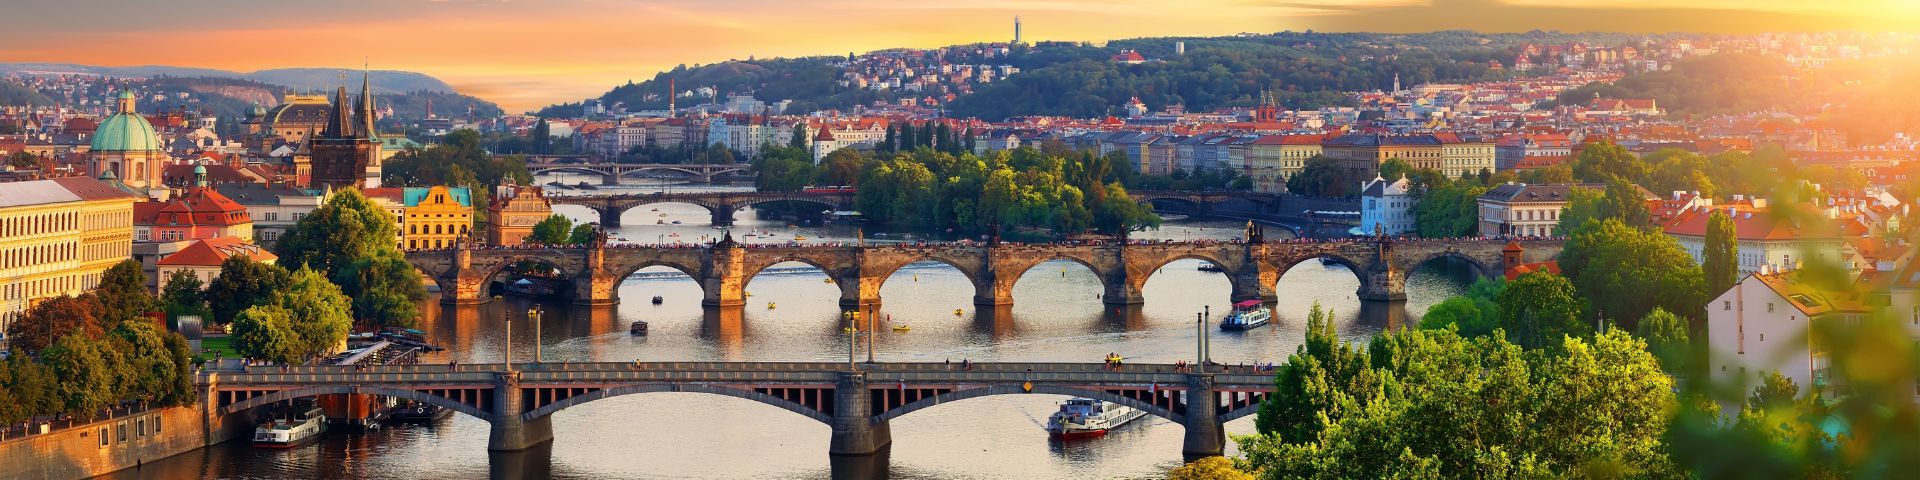 Sonnenuntergang in Prag auf einer Tschechien Reise mit sz-Reisen